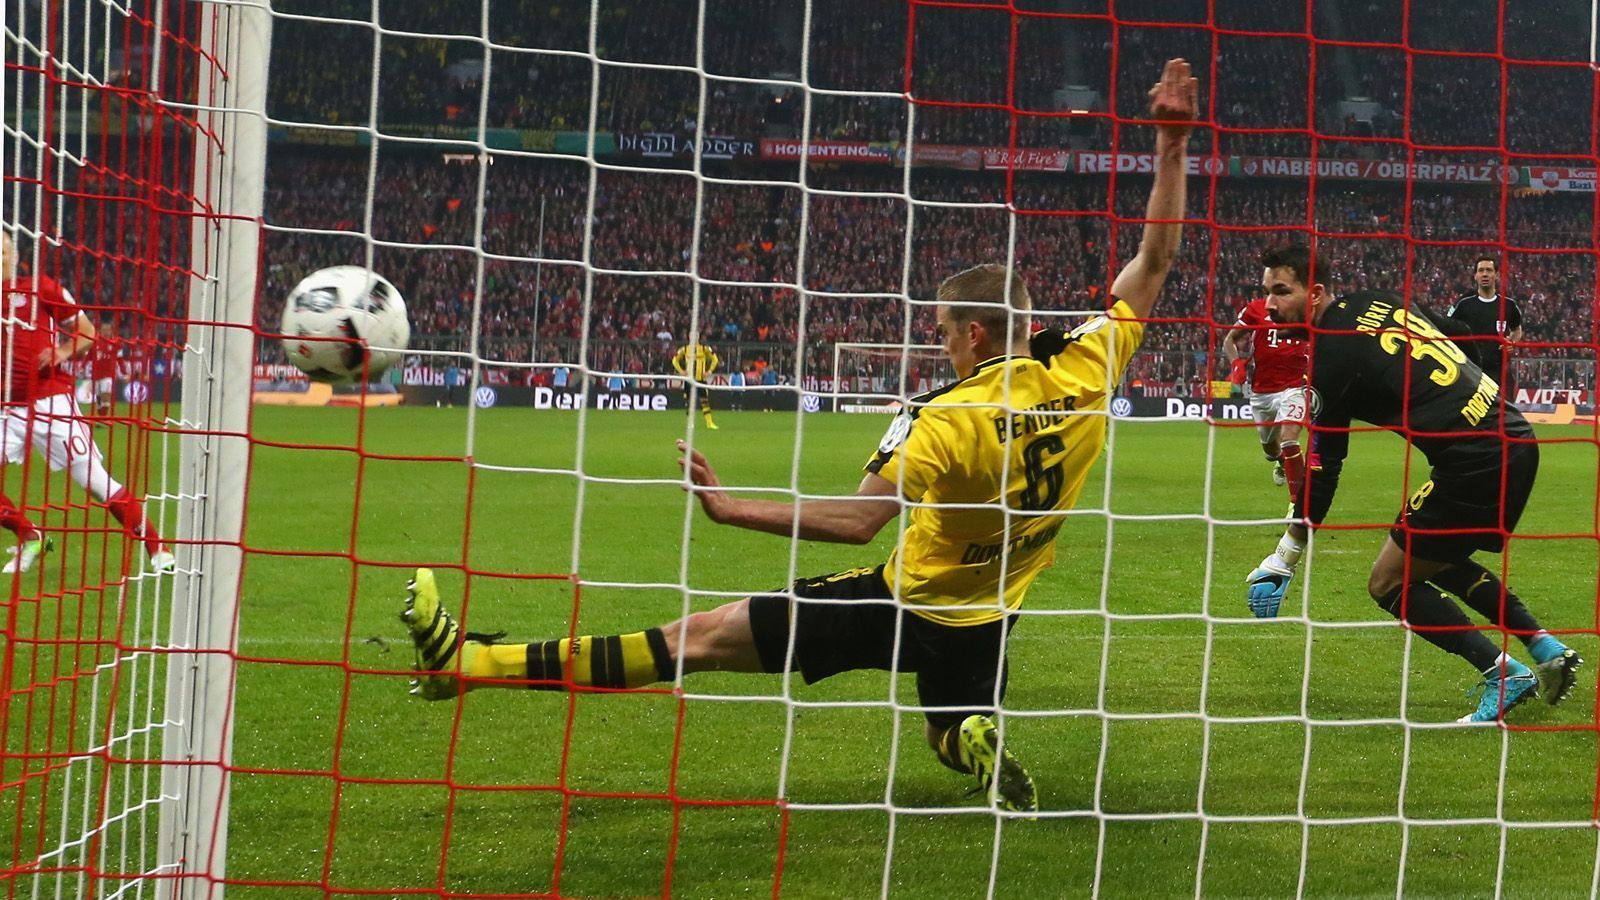 
                <strong>Pokal-Halbfinale 2016/17</strong><br>
                ... als Sven Bender in der 63. Minute beim Stand von 2:1 für die Bayern einen Schuss von Arjen Robben auf der Torlinie gerade noch heldenhaft weggrätscht und somit den fast schon sicheren dritten Gegentreffer verhindert - es ist der Auftakt zu einer imposanten Wende in der Allianz Arena. Im Pokalfinale setzt sich Dortmund dann mit 2:1 gegen Eintracht Frankfurt durch und sichert sich den vierten DFB-Pokal-Titel.
              